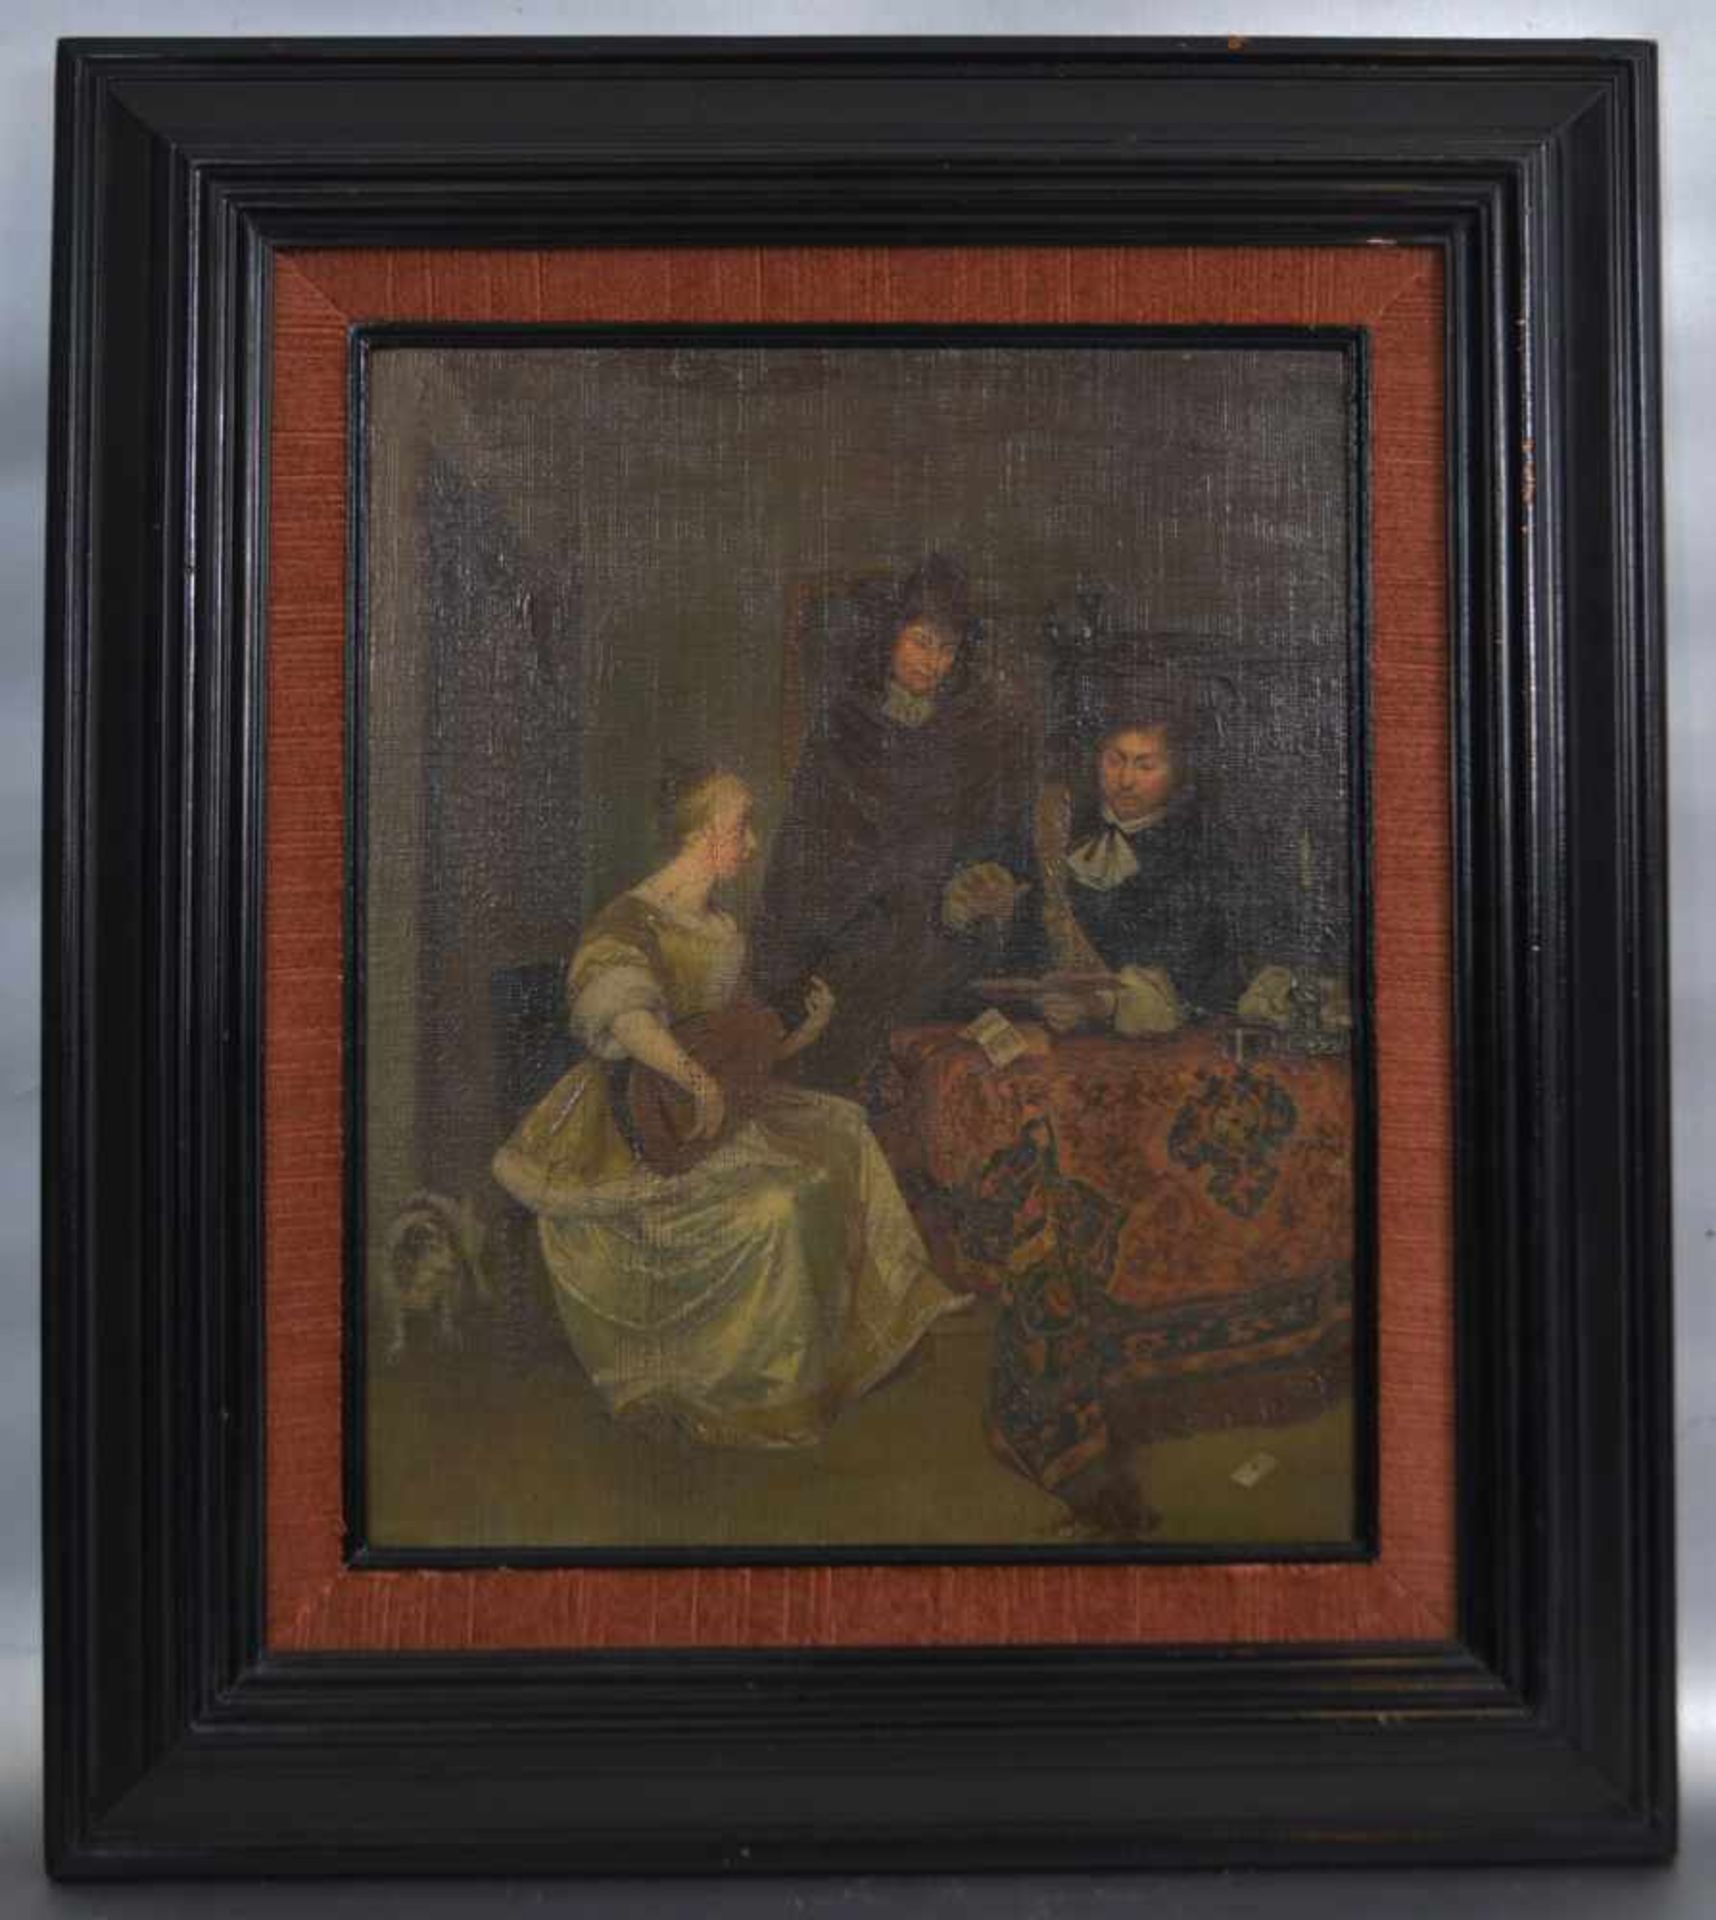 Unbekannter Maler18. Jh., der Musikabend, Frau mit Laute und zwei Herren am Tisch, Öl/Lwd., 25 X